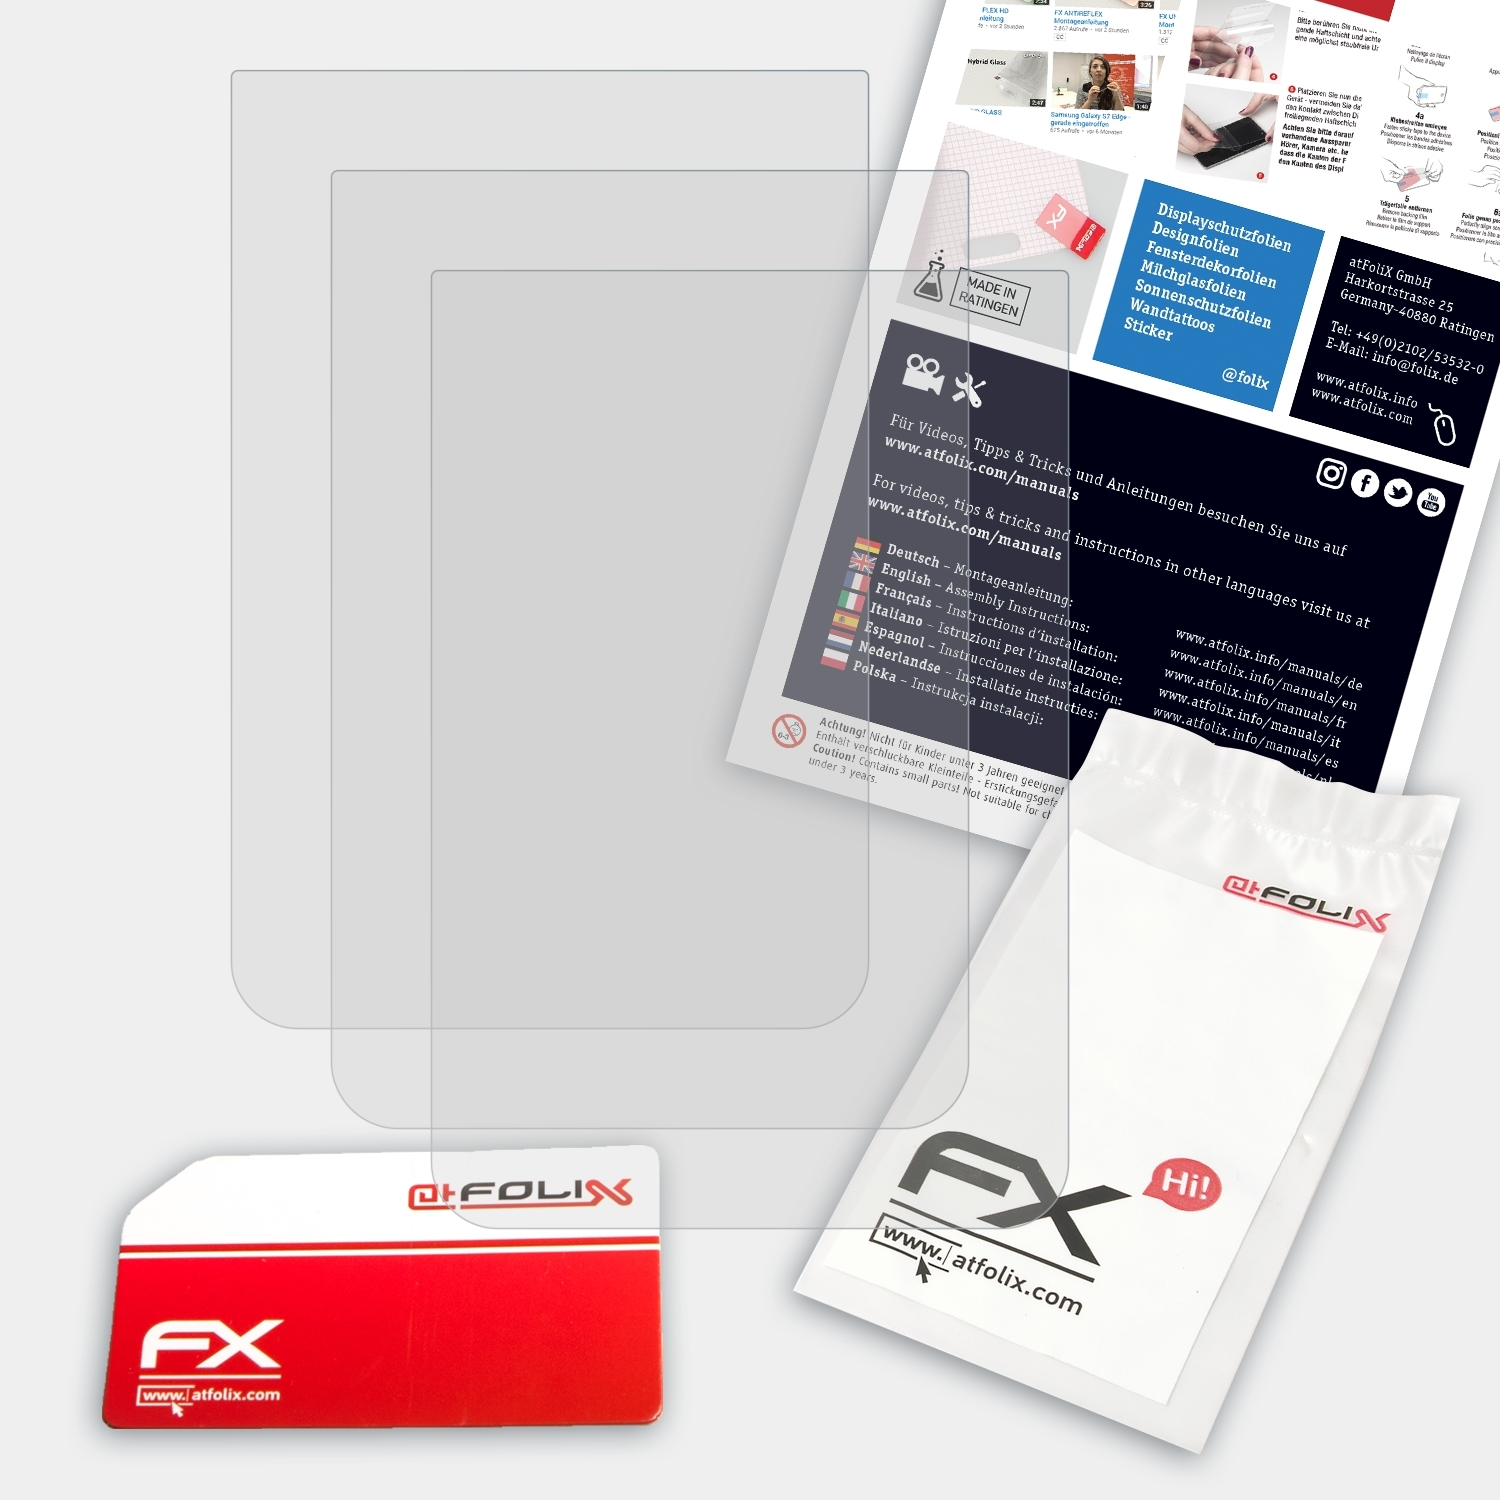 3x ATFOLIX EX-FR100) Displayschutz(für Casio Exilim FX-Antireflex